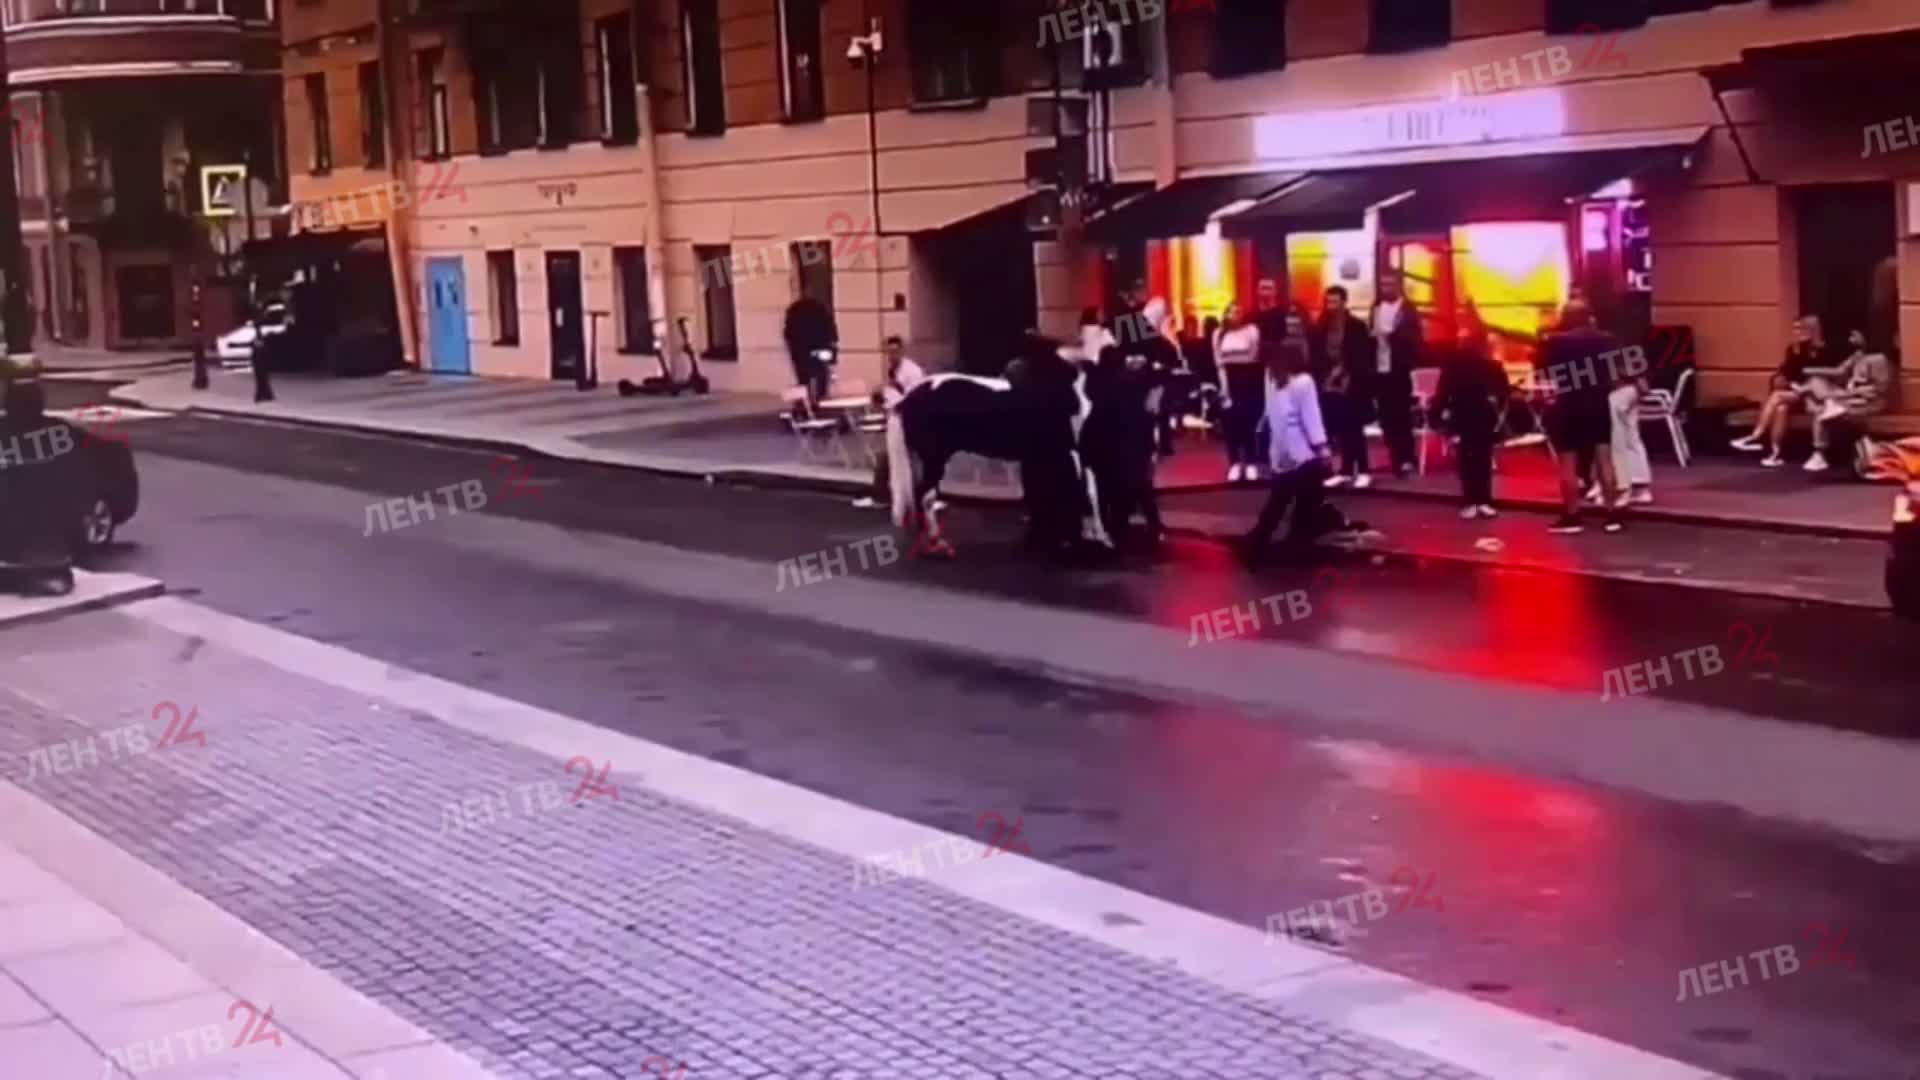 Битву за лошадь устроили неадекватные мужчины в центре Петербурга. Больше всех досталось животному